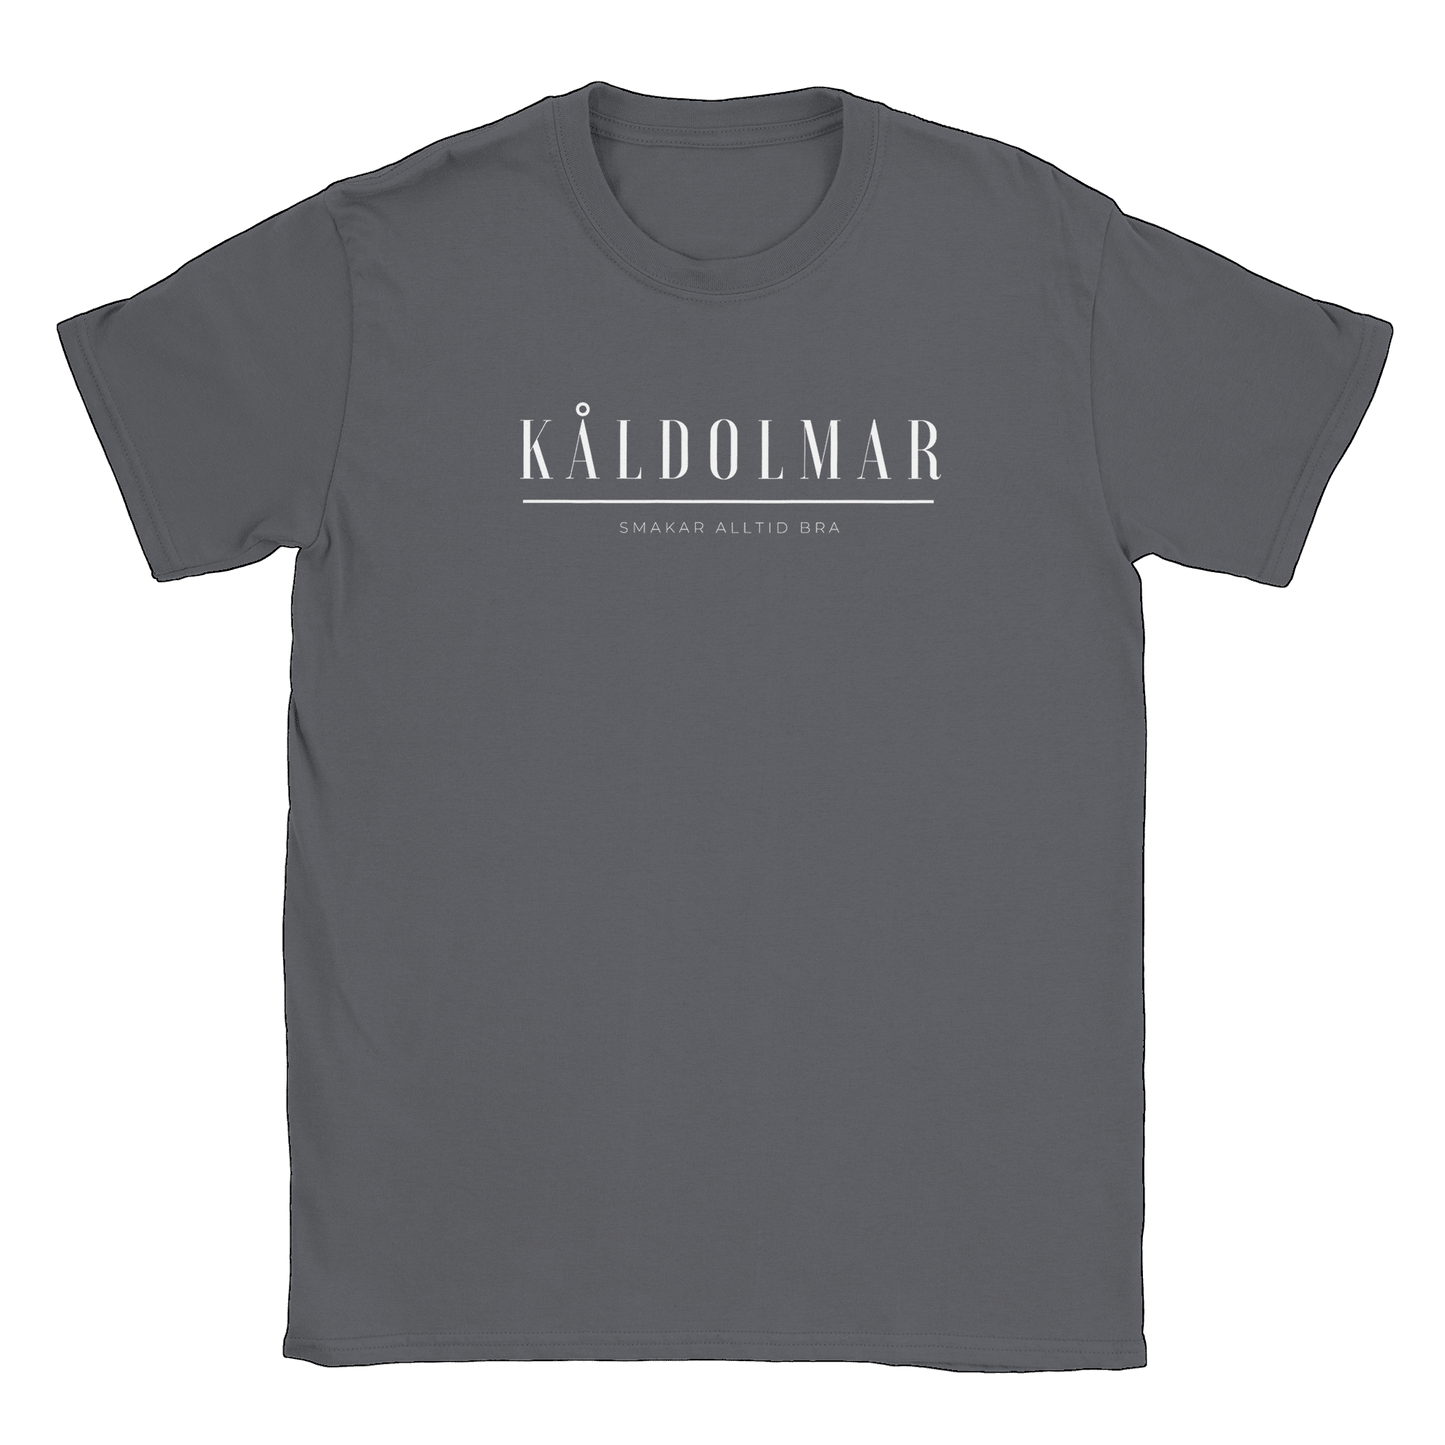 Kåldolmar - T-shirt Charcoal